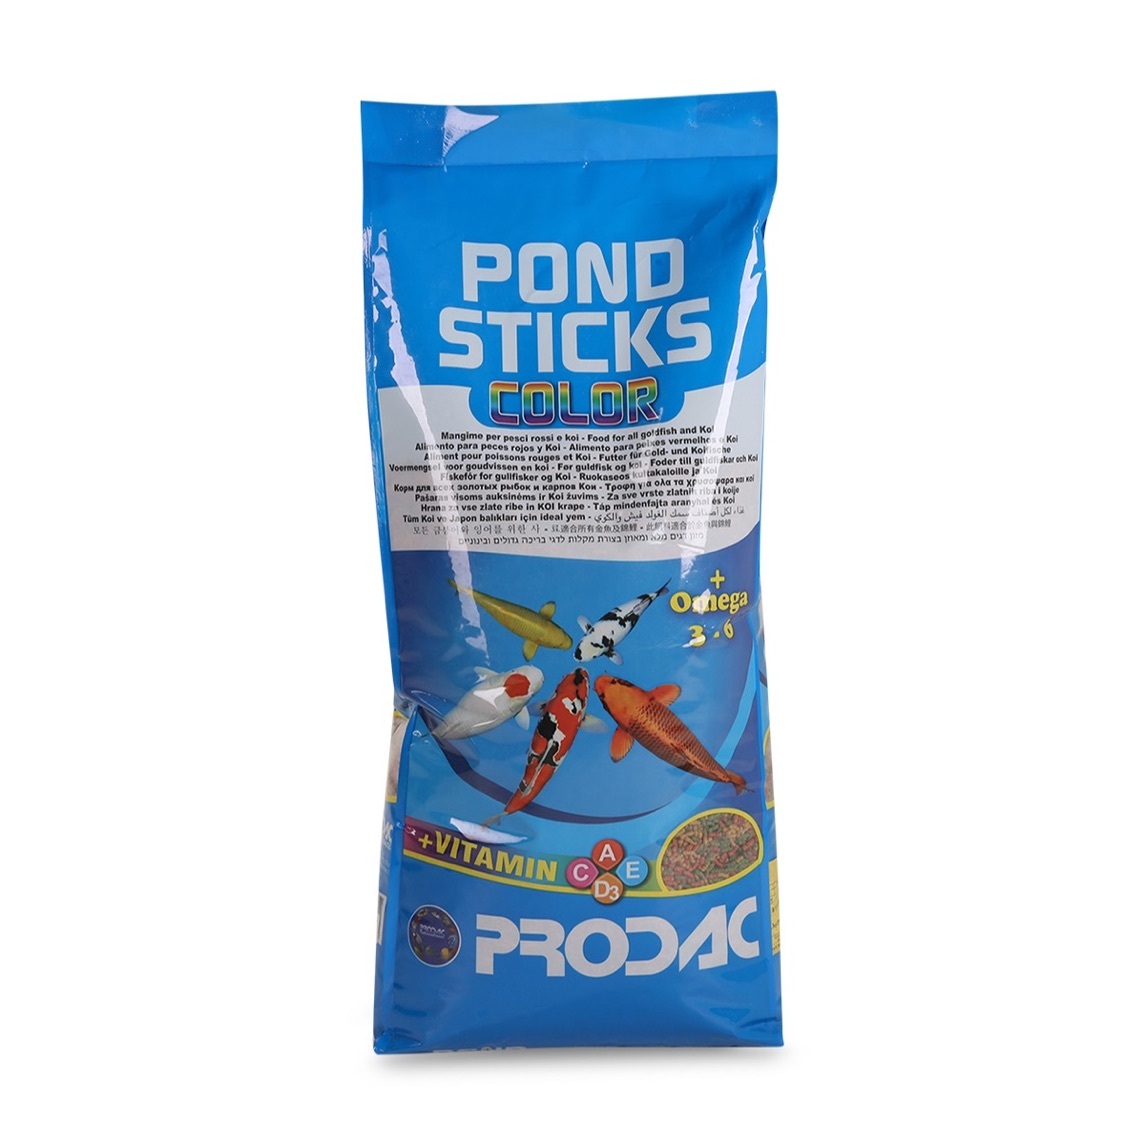 PRODAC PONDSTICKS,  3 вида палочек, мешок 4кг (40 литров).